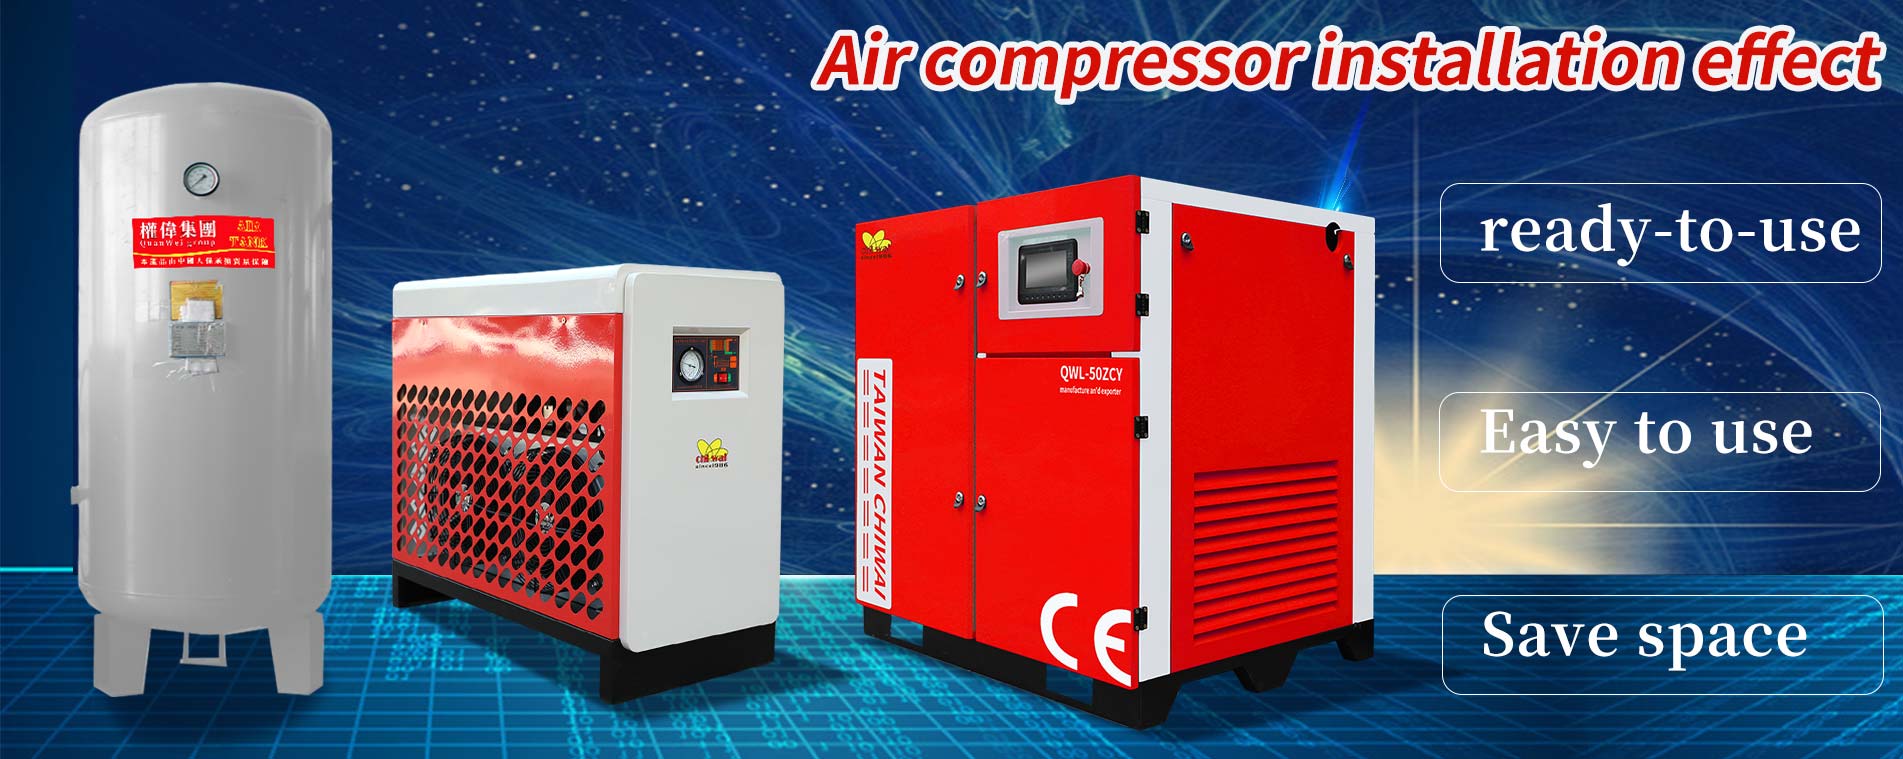 Air compressorinstallation effect